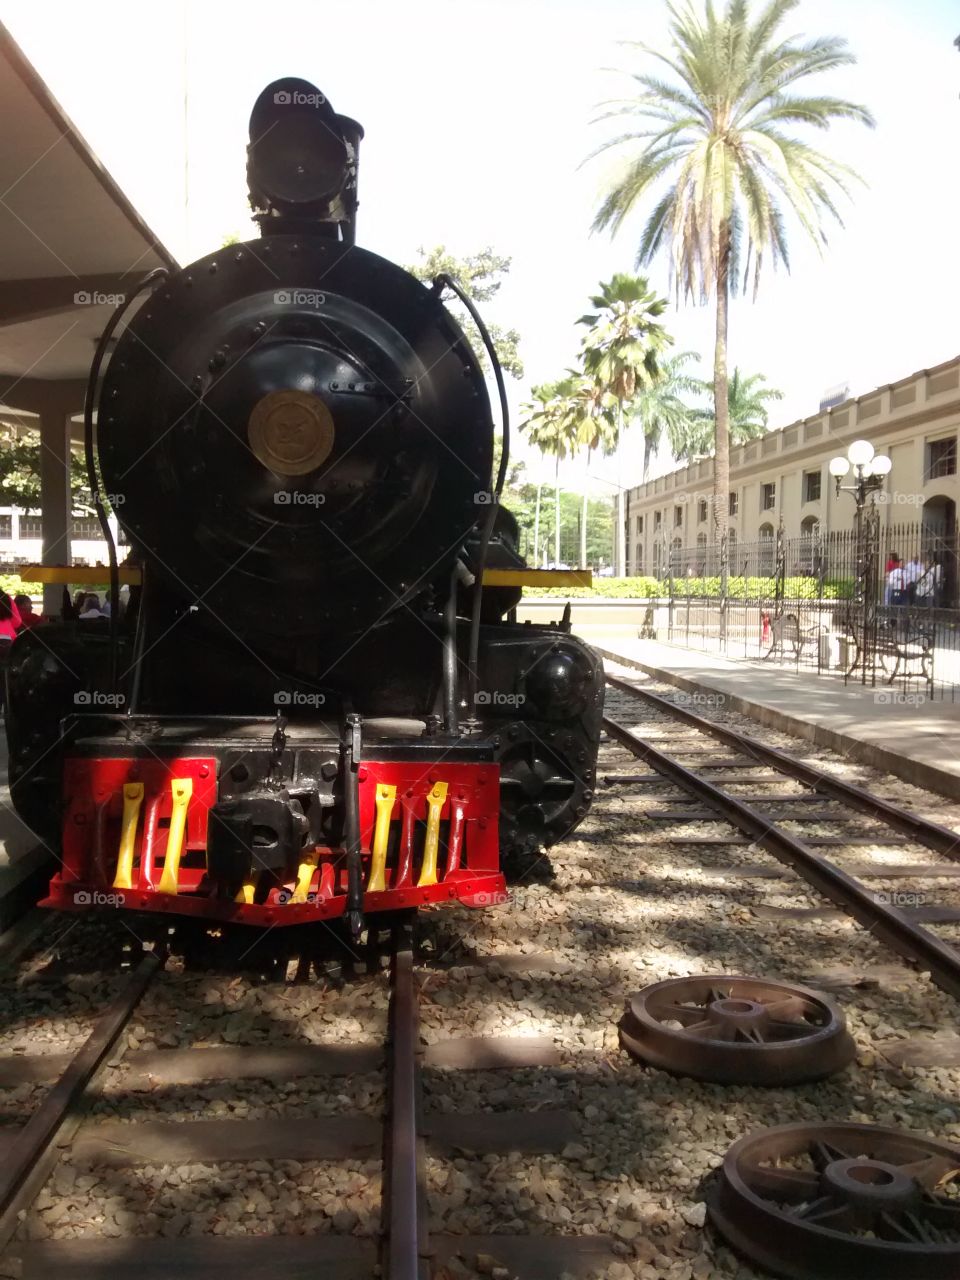 Ferrocarril de Antioquia, patrimonio de la ciudad de Medellín.